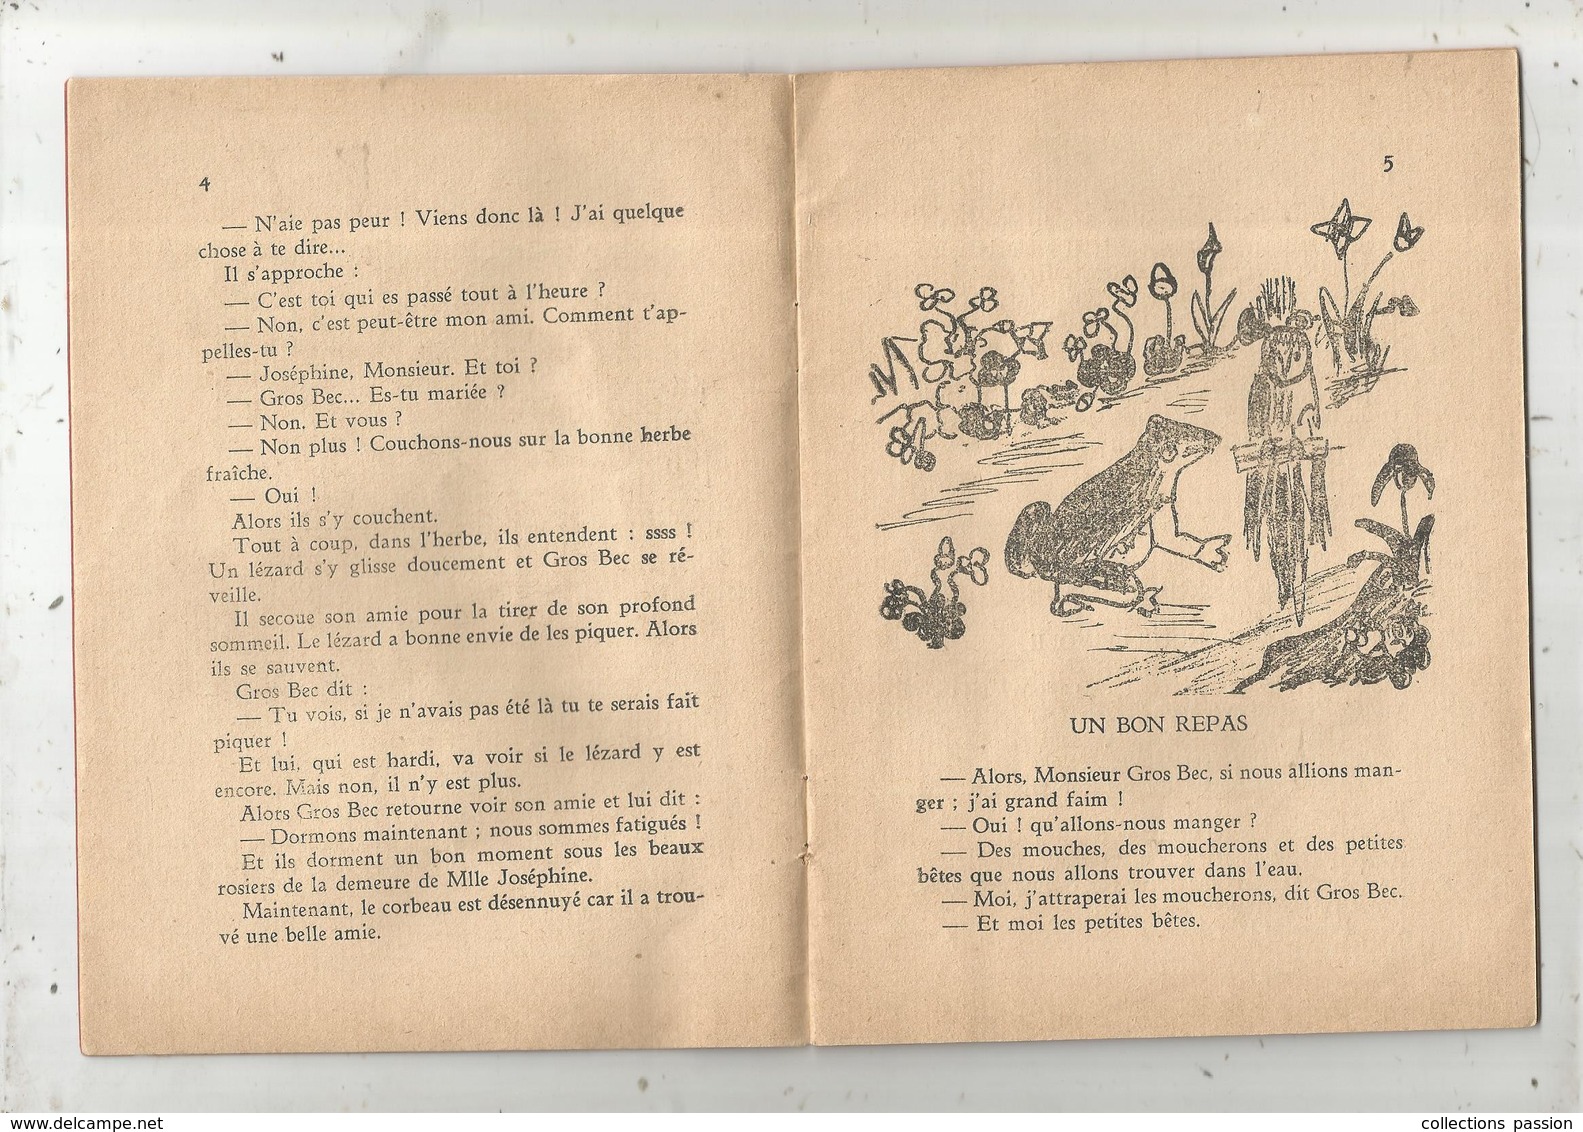 Publication Mensuelle , 1933, N° 53,ENFANTINES , Dans La Mare Du Beau Rosier, Illustrations ,4 Scans  ,frais Fr :3.15 E - 6-12 Ans